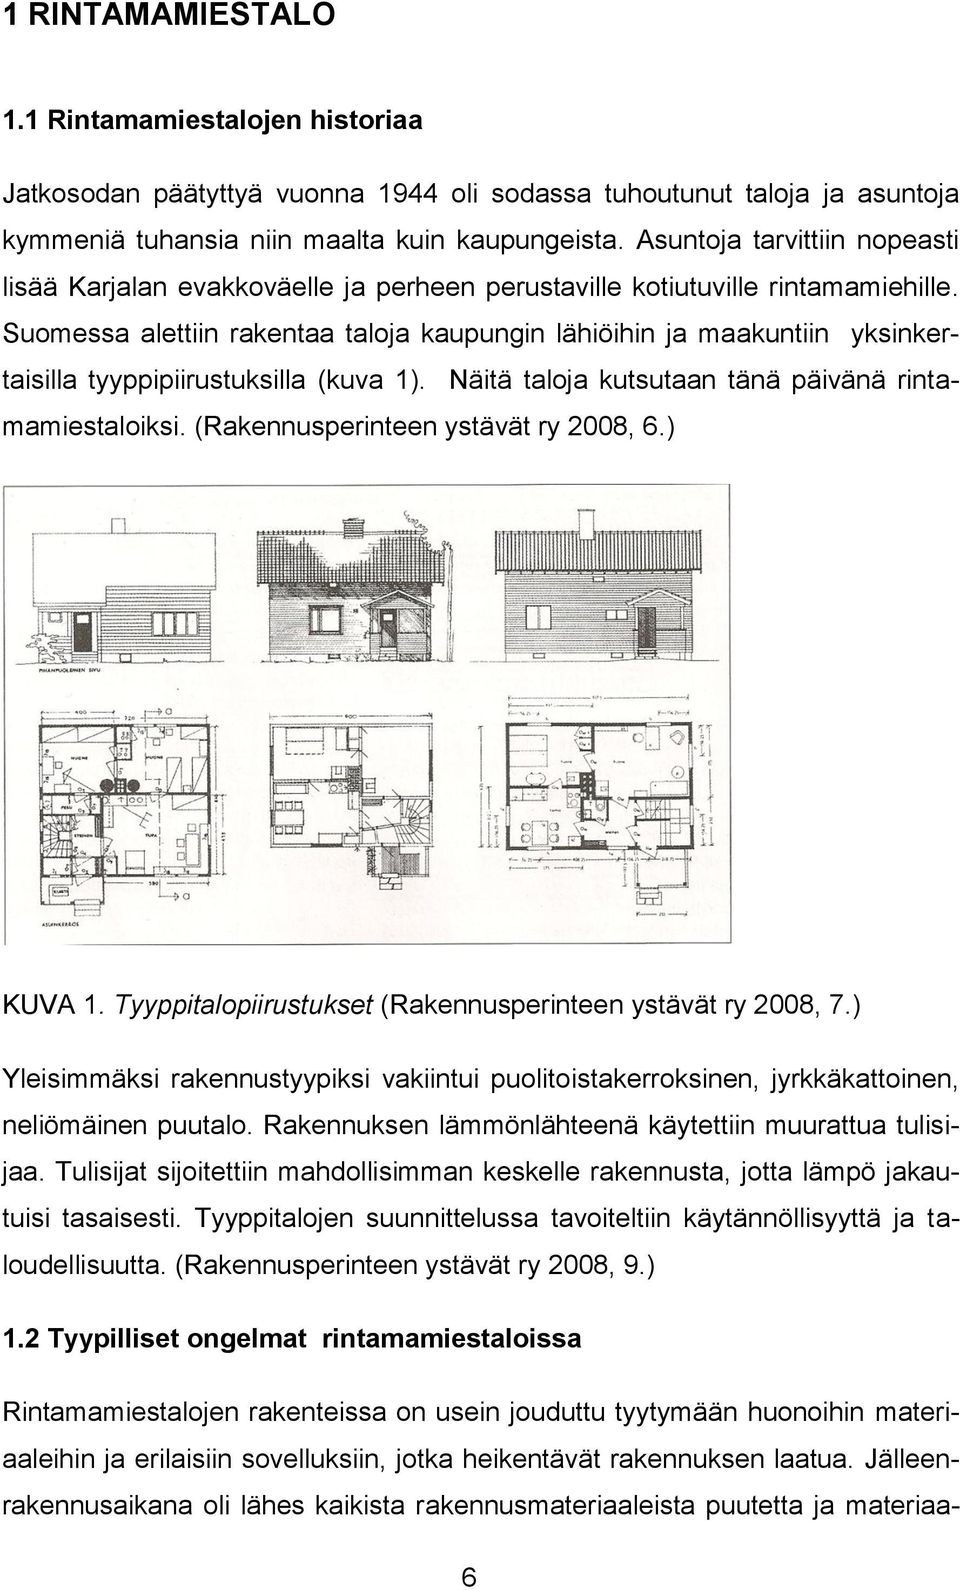 Suomessa alettiin rakentaa taloja kaupungin lähiöihin ja maakuntiin yksinkertaisilla tyyppipiirustuksilla (kuva 1). Näitä taloja kutsutaan tänä päivänä rintamamiestaloiksi.